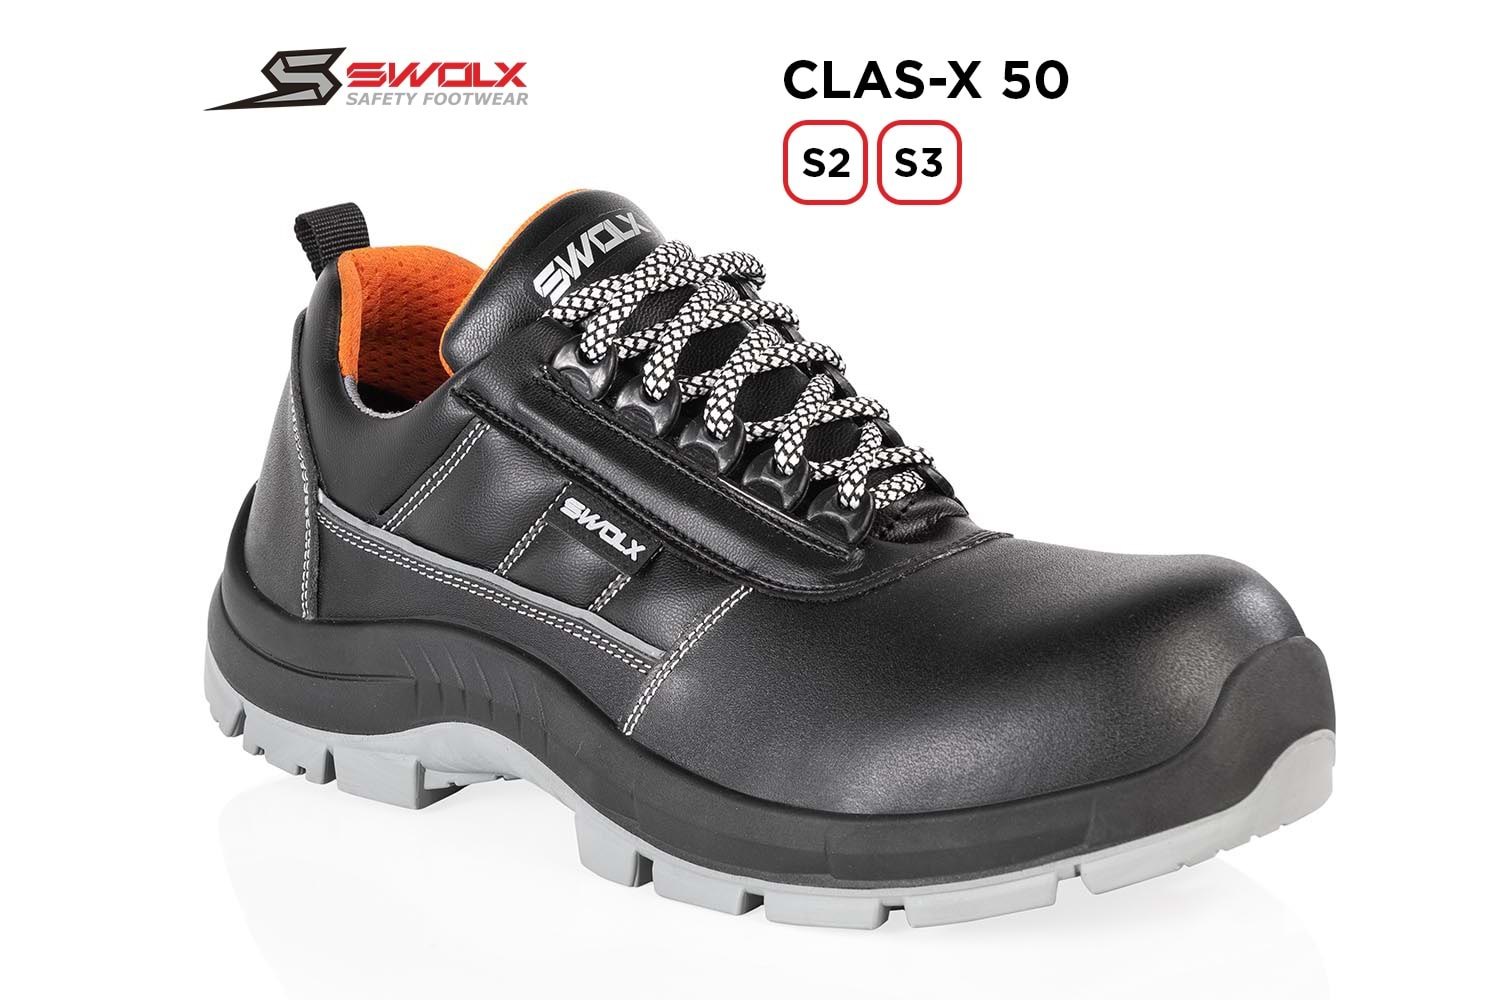 Swolx İş Ayakkabısı - Clas-X 50 S2 - 38